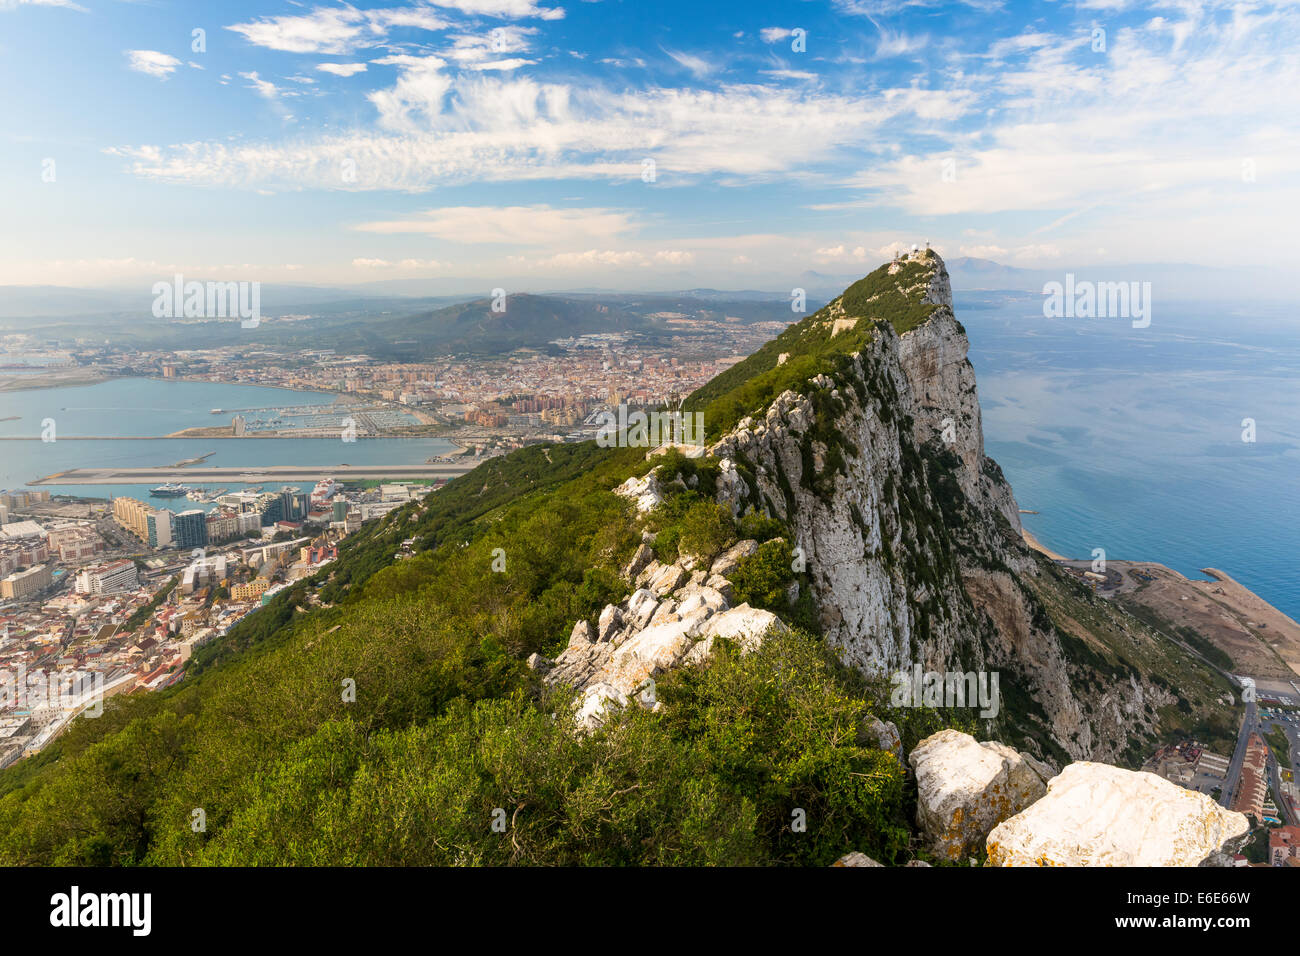 La Bahía de Algeciras y La Linea, visto desde el Peñón de Gibraltar Foto de stock